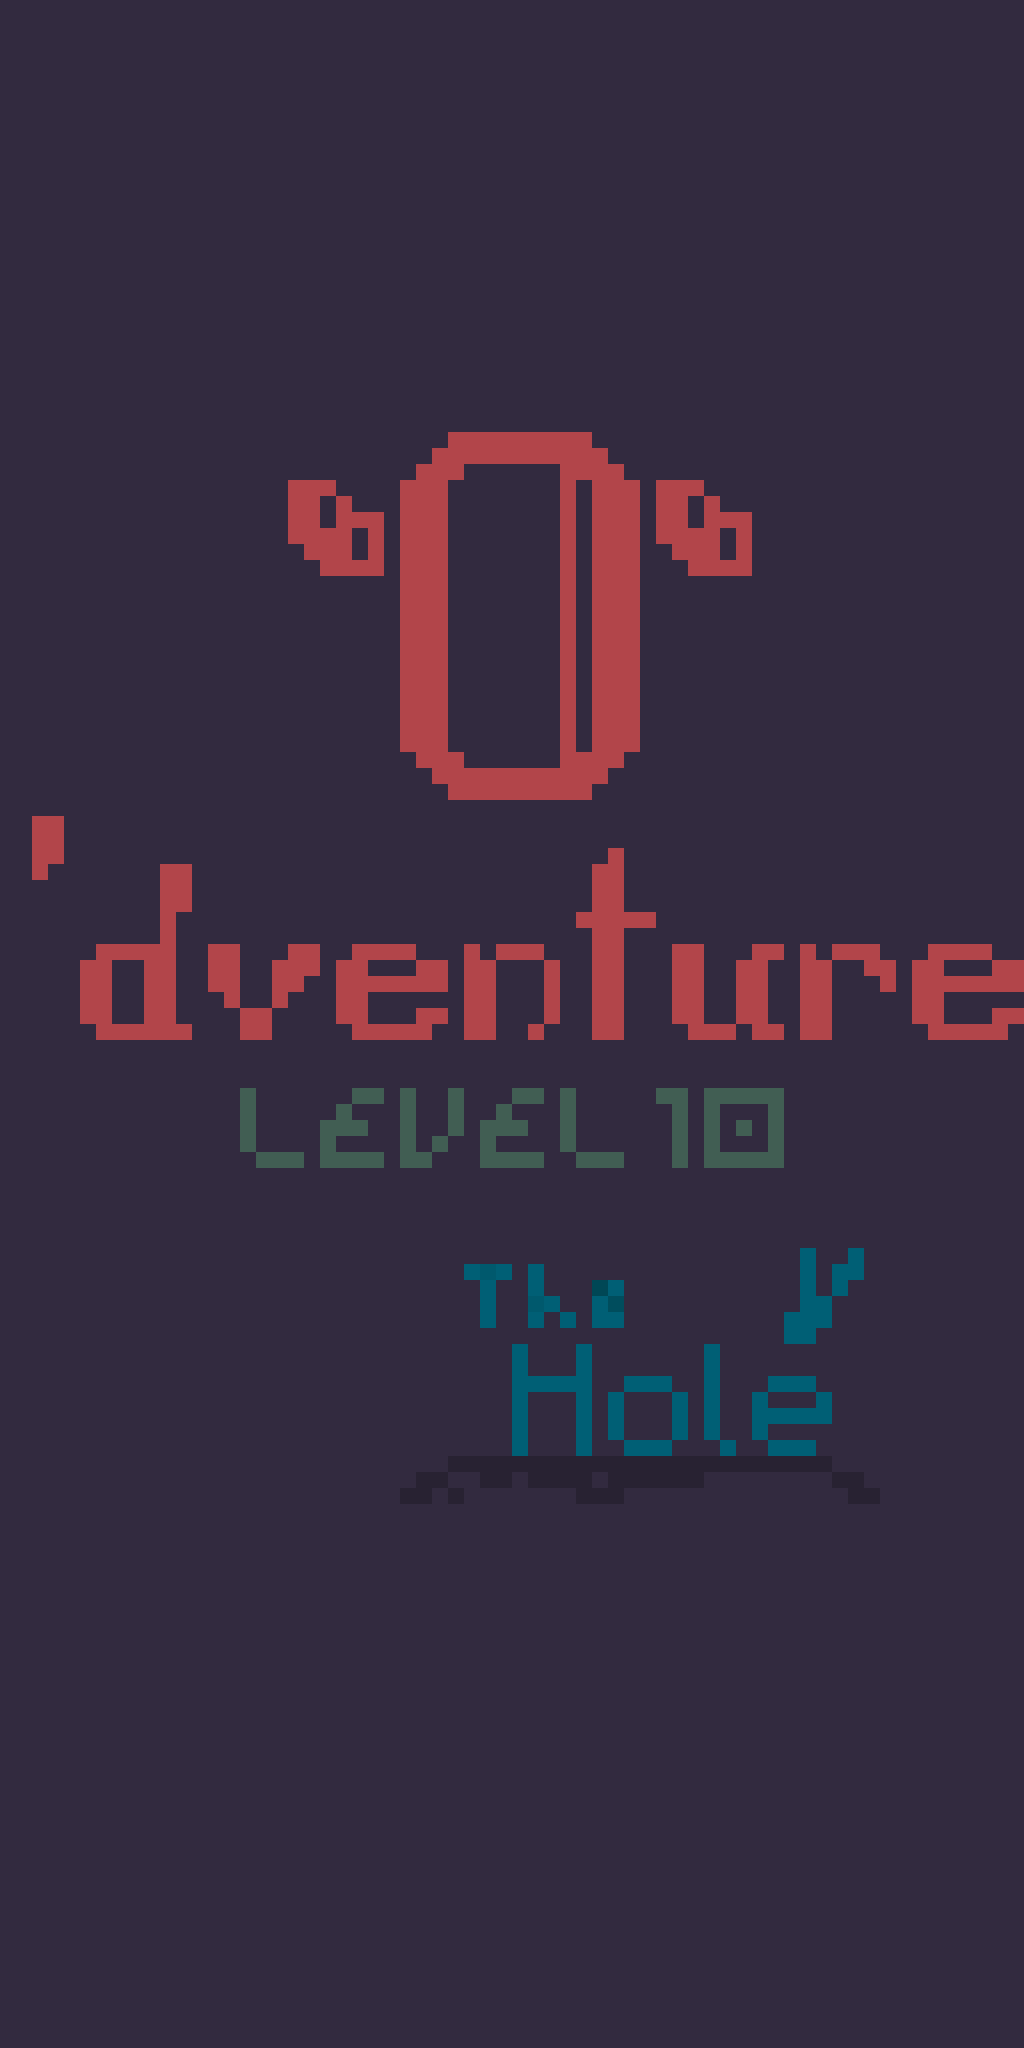 O’dventure Level 10: The Hole